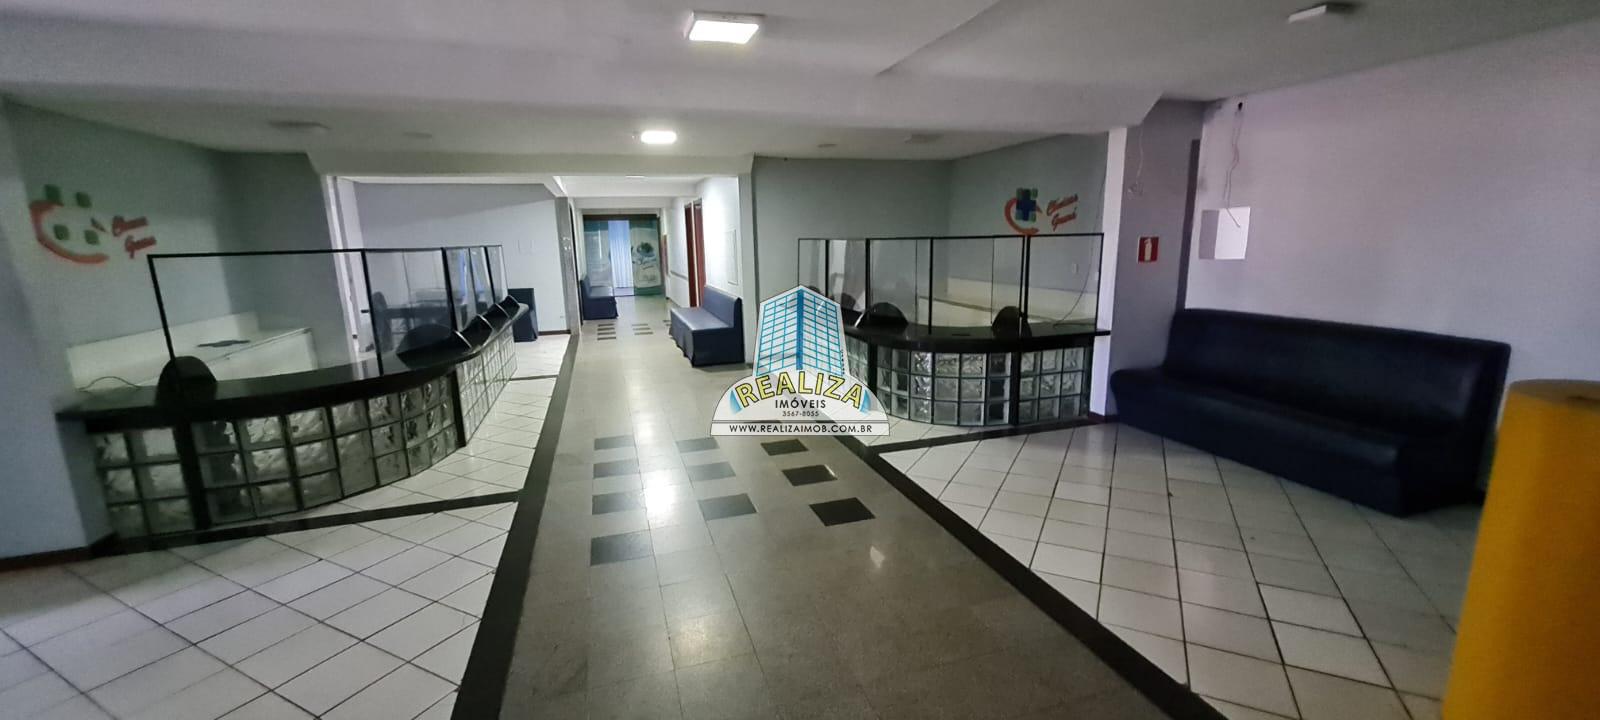 Centro Clínico Office Center 15 Salas Guara QE 11  